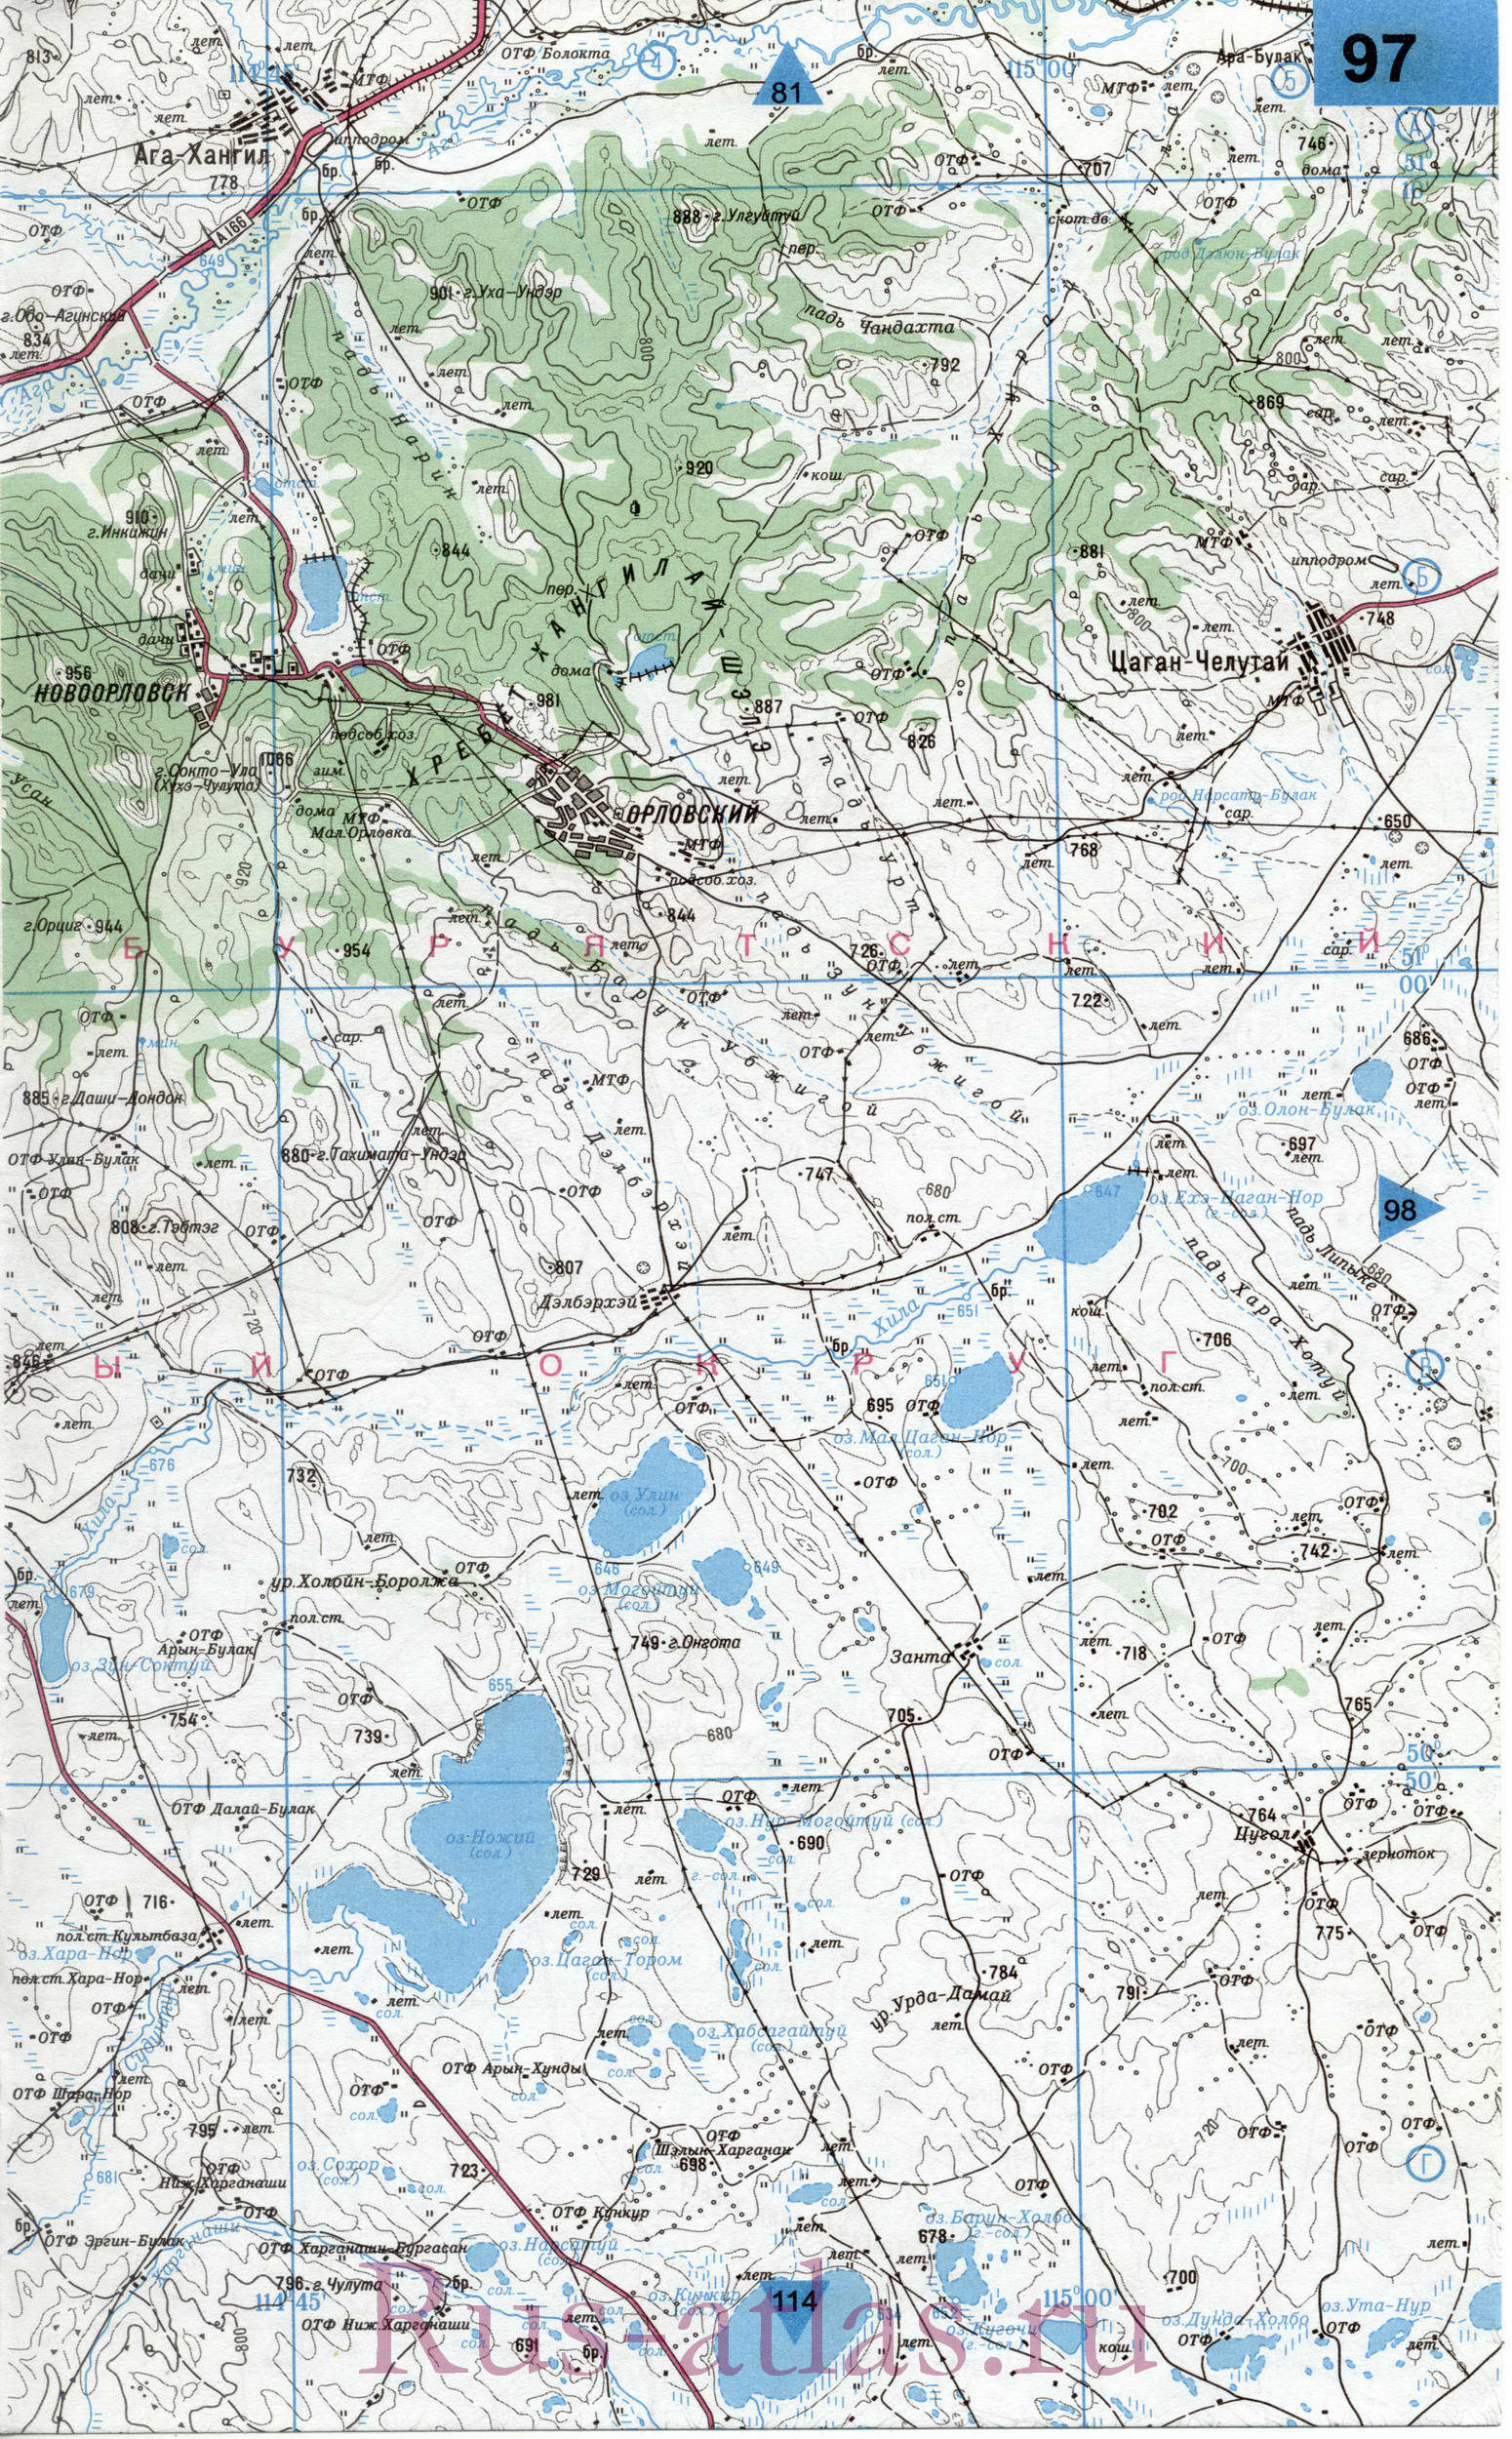 Могойтуйский район АБАО Забайкальского края - карта подробная топографическая 1см:2км, A1 - 